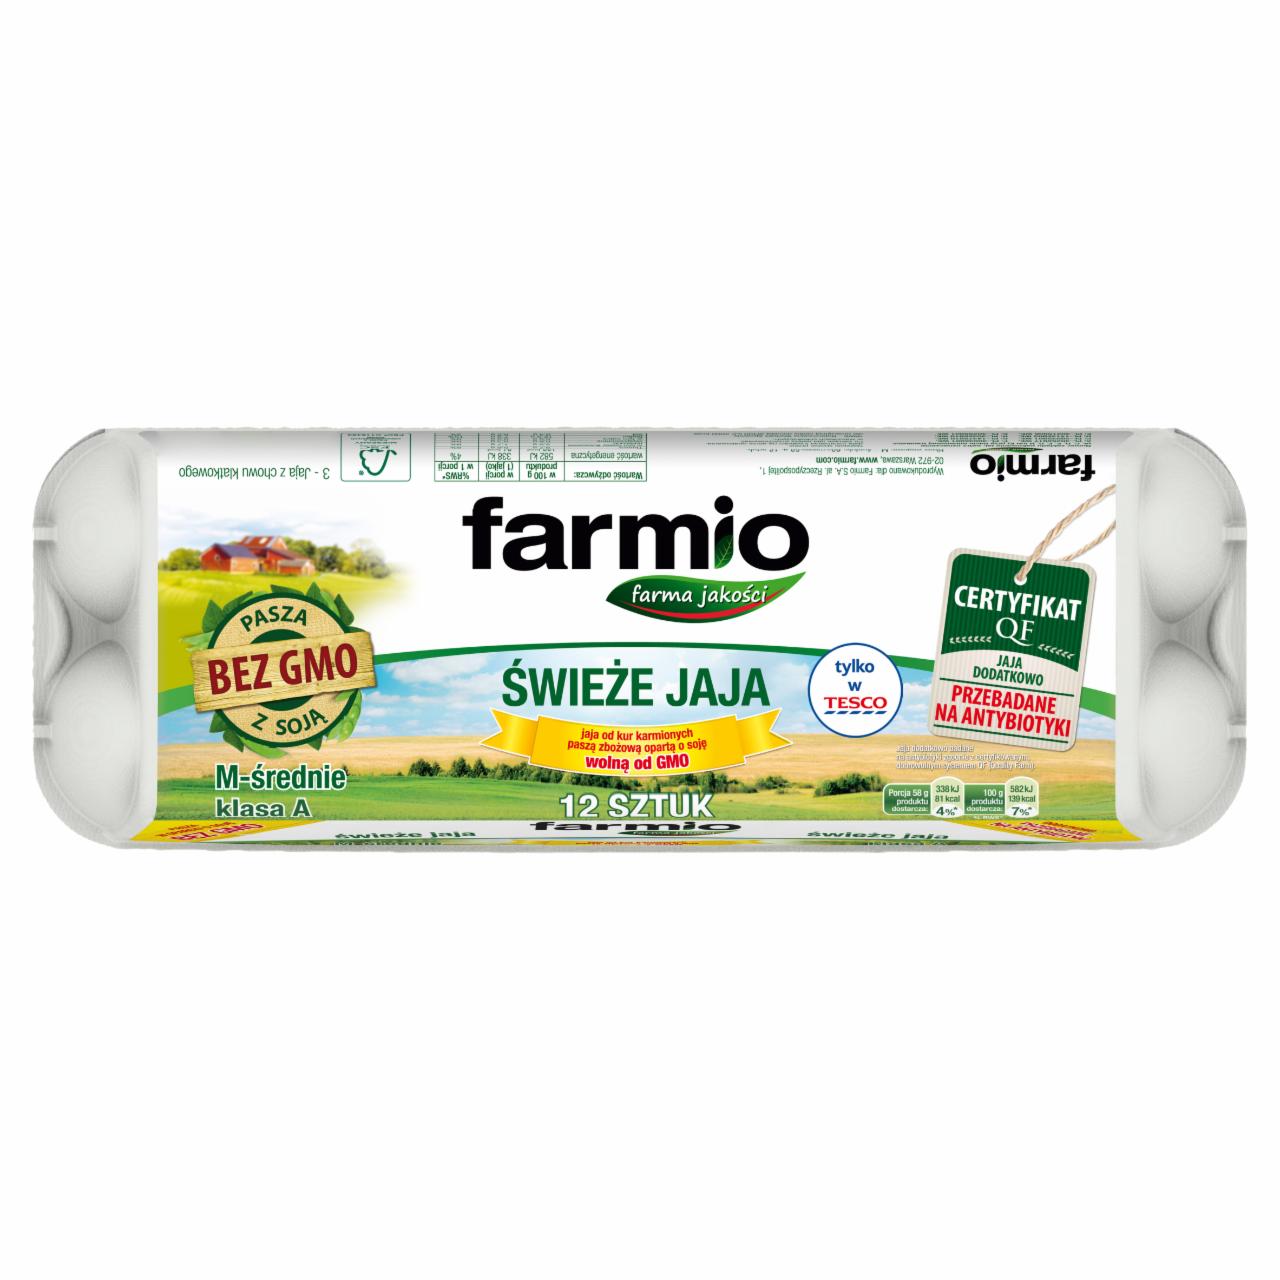 Zdjęcia - Farmio Jaja świeże od kur karmionych paszą z soją bez GMO M 12 sztuk